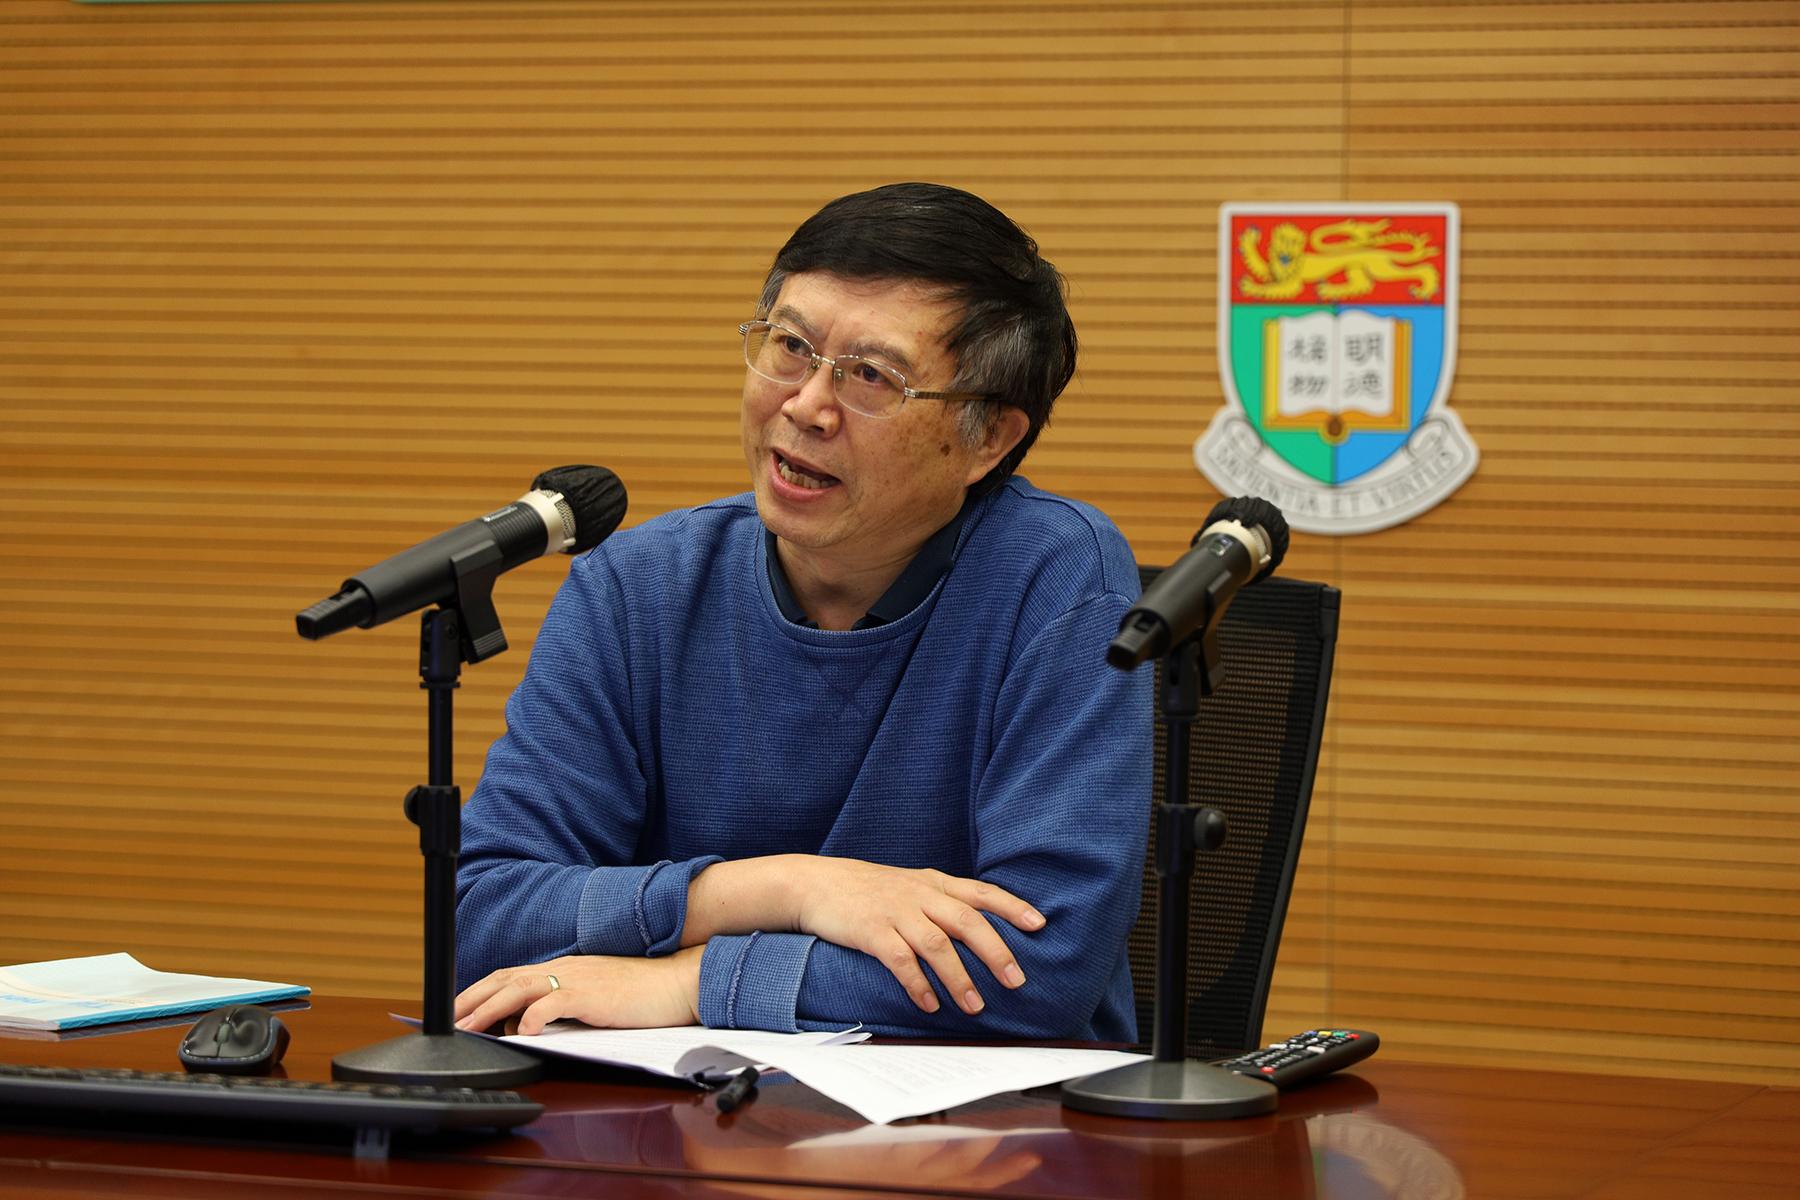 李玉国教授在香港大学 COVID-19 演讲 2020 上发言